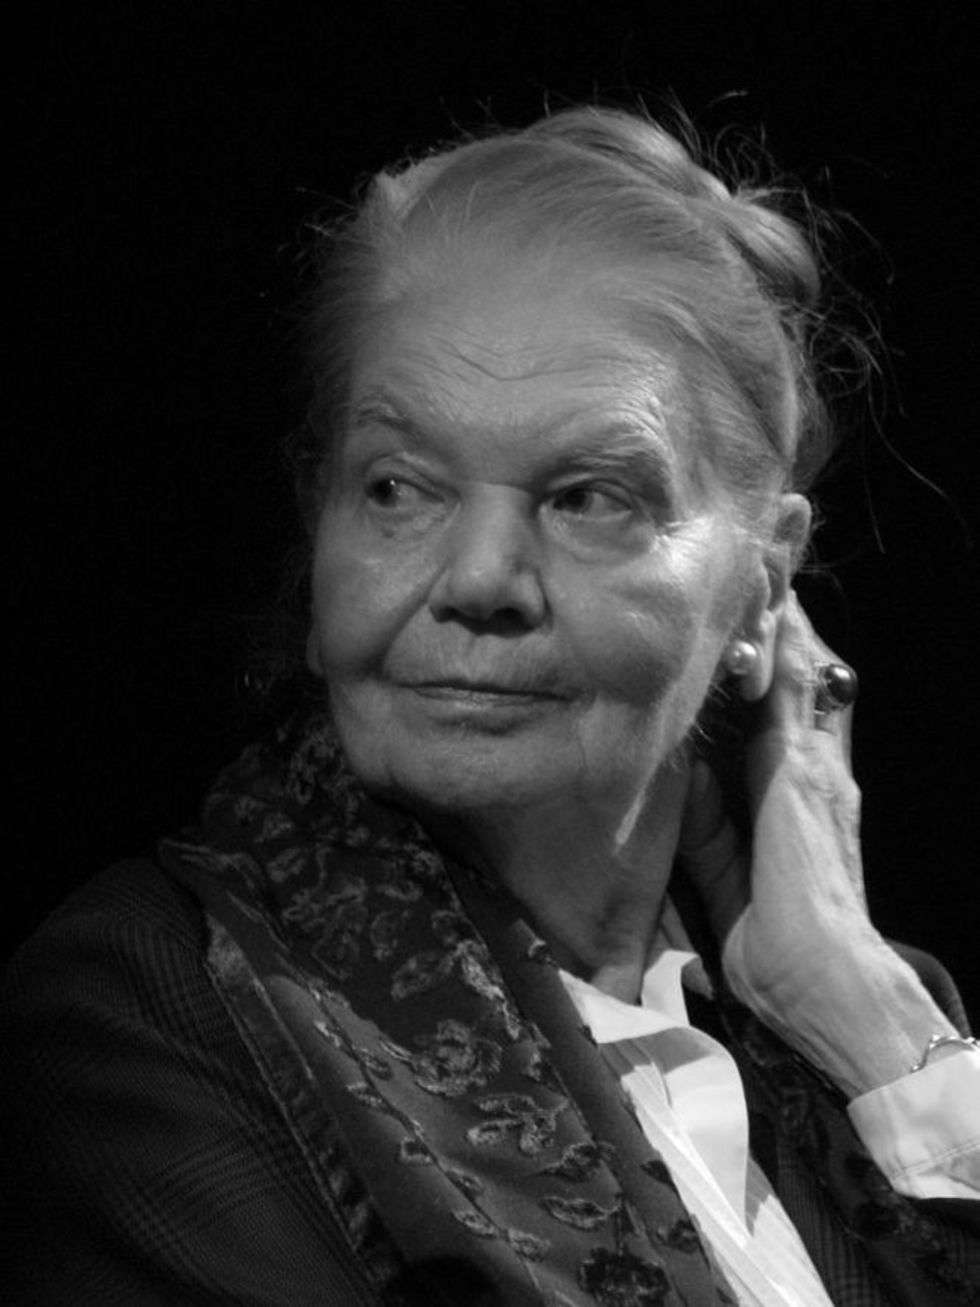  <p><strong>2017 -&nbsp;lipiec</strong></p>
<p><strong>Julia Hartwig</strong></p>
<p>Julia Hartwig urodziła się 14 sierpnia 1921 roku w Lublinie, od 2009 roku jest Honorowym Obywatelem Miasta Lublin.</p>
<p>Była c&oacute;rką fotografa Ludwika Hartwiga i Marii Birjukow, siostrą Edwarda, fotografika i Walentego, endokrynologa. Dzieciństwo Julia Hartwig spędziła w Lublinie. Jej rodzina mieszkała przy ulicy Staszica 2, następnie na Krakowskim Przedmieściu. Gł&oacute;wnym źr&oacute;dłem utrzymania był zakład fotograficzny ojca. Uczyła się w Gimnazjum im. Unii Lubelskiej w Lublinie. W 1936 roku, w gazetce szkolnej &bdquo;W słońce&rdquo;, opublikowała sw&oacute;j pierwszy wiersz. Podczas II wojny światowej była łączniczką Armii Krajowej, uczestniczką podziemnego życia kulturalnego.</p>
<p>Studiowała polonistykę i romanistykę na Tajnym Uniwersytecie Warszawskim (1942-1944) i Uniwersytecie Warszawskim (1946) oraz Katolickim Uniwersytecie Lubelskim. W latach 1947-50 przebywała we Francji, gdzie była stypendystką rządu francuskiego i urzędniczką w dziale kulturalnym Ambasady Polskiej w Paryżu. Mieszkała następnie w Warszawie. W latach 1952-69 była autorką słuchowisk nadawanych w Polskim Radiu.</p>
<p>W latach 1970-74, razem z mężem Arturem Międzyrzeckim, przebywała w USA; była uczestniczką programu International Writing Program, a następnie wykładowcą Drake University. Prowadziła też wykłady na Uniwersytecie Ottawy i Carleton University w Kanadzie. W 1976 była sygnatariuszką &bdquo;Memoriału 101&rdquo;. W 1979 roku ponownie przebywała w USA na zaproszenie Departamentu Stanu. W 1989 roku była członkiem Komitetu Obywatelskiego przy Przewodniczącym NSZZ &bdquo;Solidarność&rdquo; Lechu Wałęsie.</p>
<p>Dorobek literacki Julii Hartwig obejmuje kilkanaście zbior&oacute;w poezji i prozy poetyckiej oraz monografie, eseje, tłumaczenia, książki dla dzieci.</p>
<p>Zmarła w Stanach Zjednoczonych. Poetka miała 95 lat.</p>